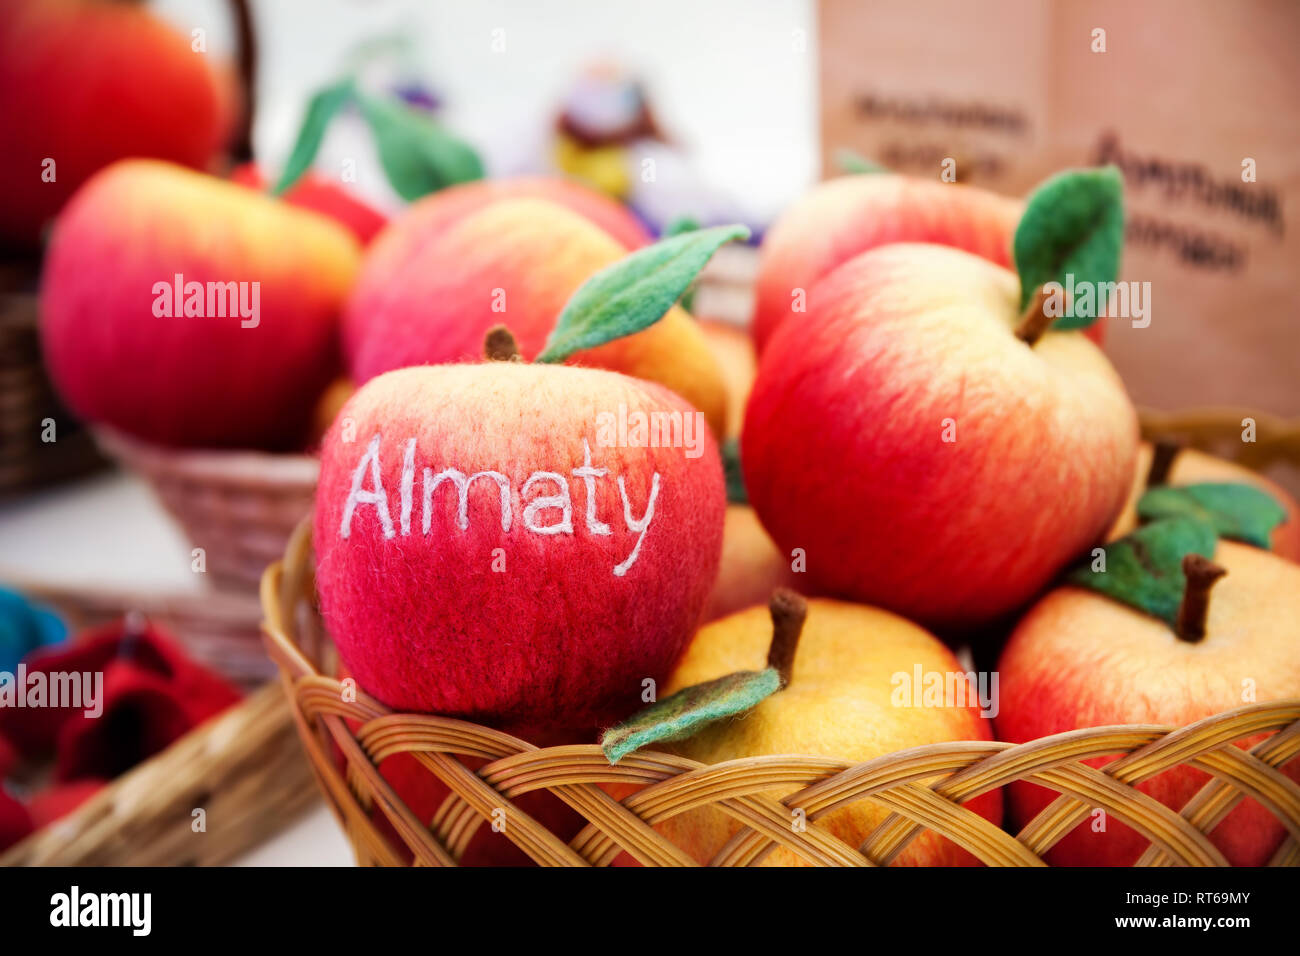 Red apple dal feltro con testo città Almaty al mercato in Kazakistan Foto Stock